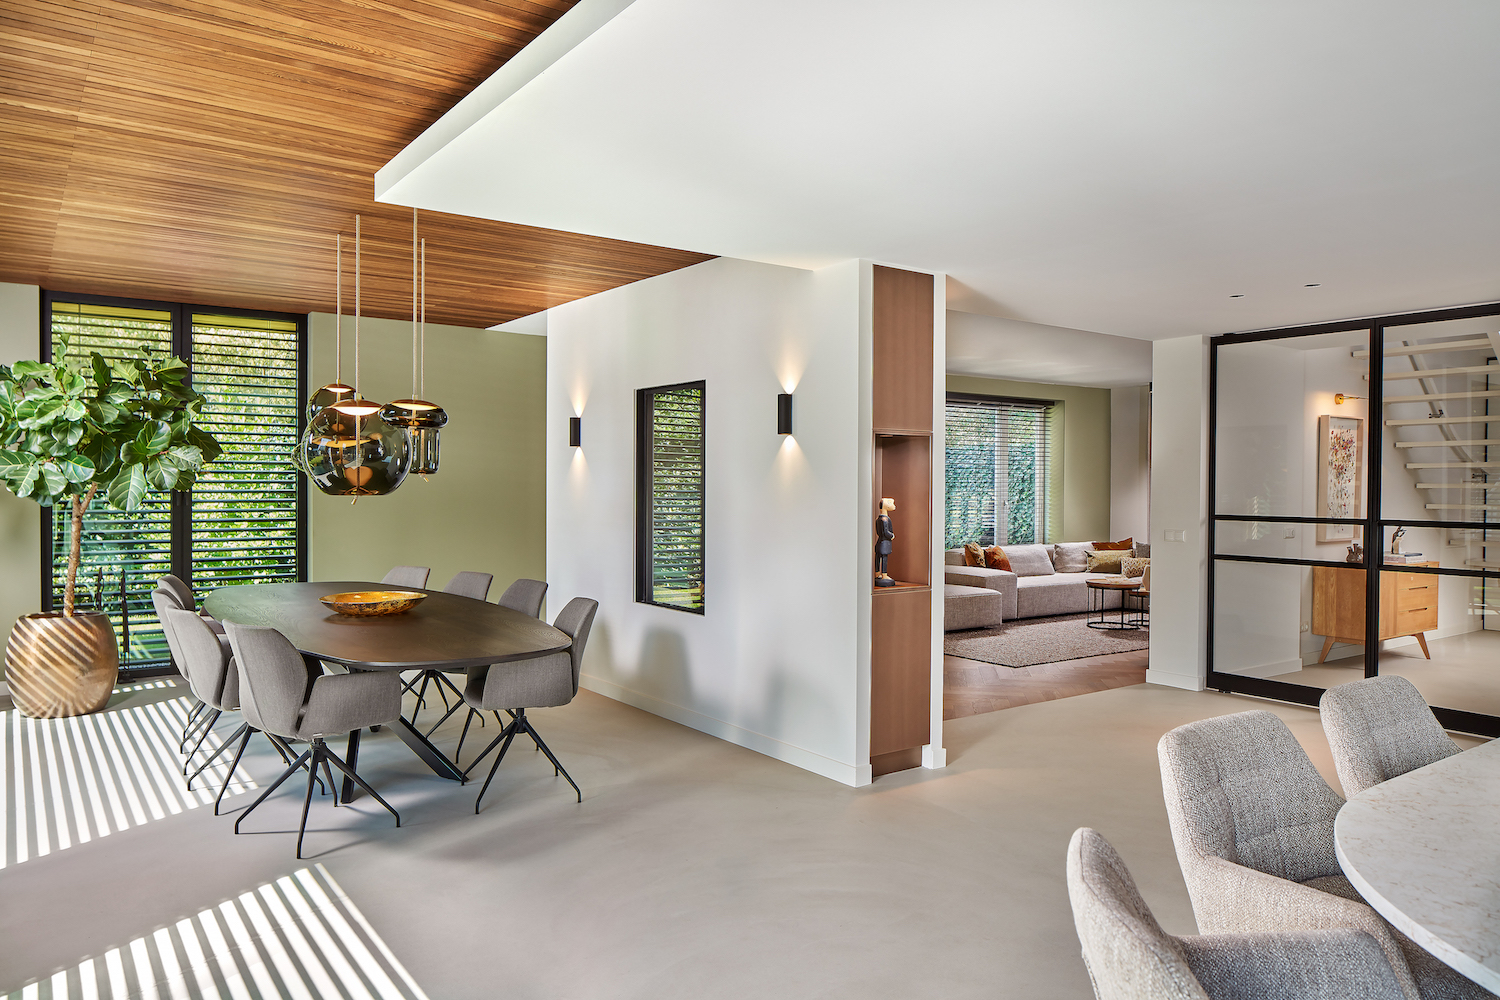 van-os-architecten-verbouwing-villa-ruitersbos-breda-hogteverschil-in-plafonds-met-houten-latten-plafond